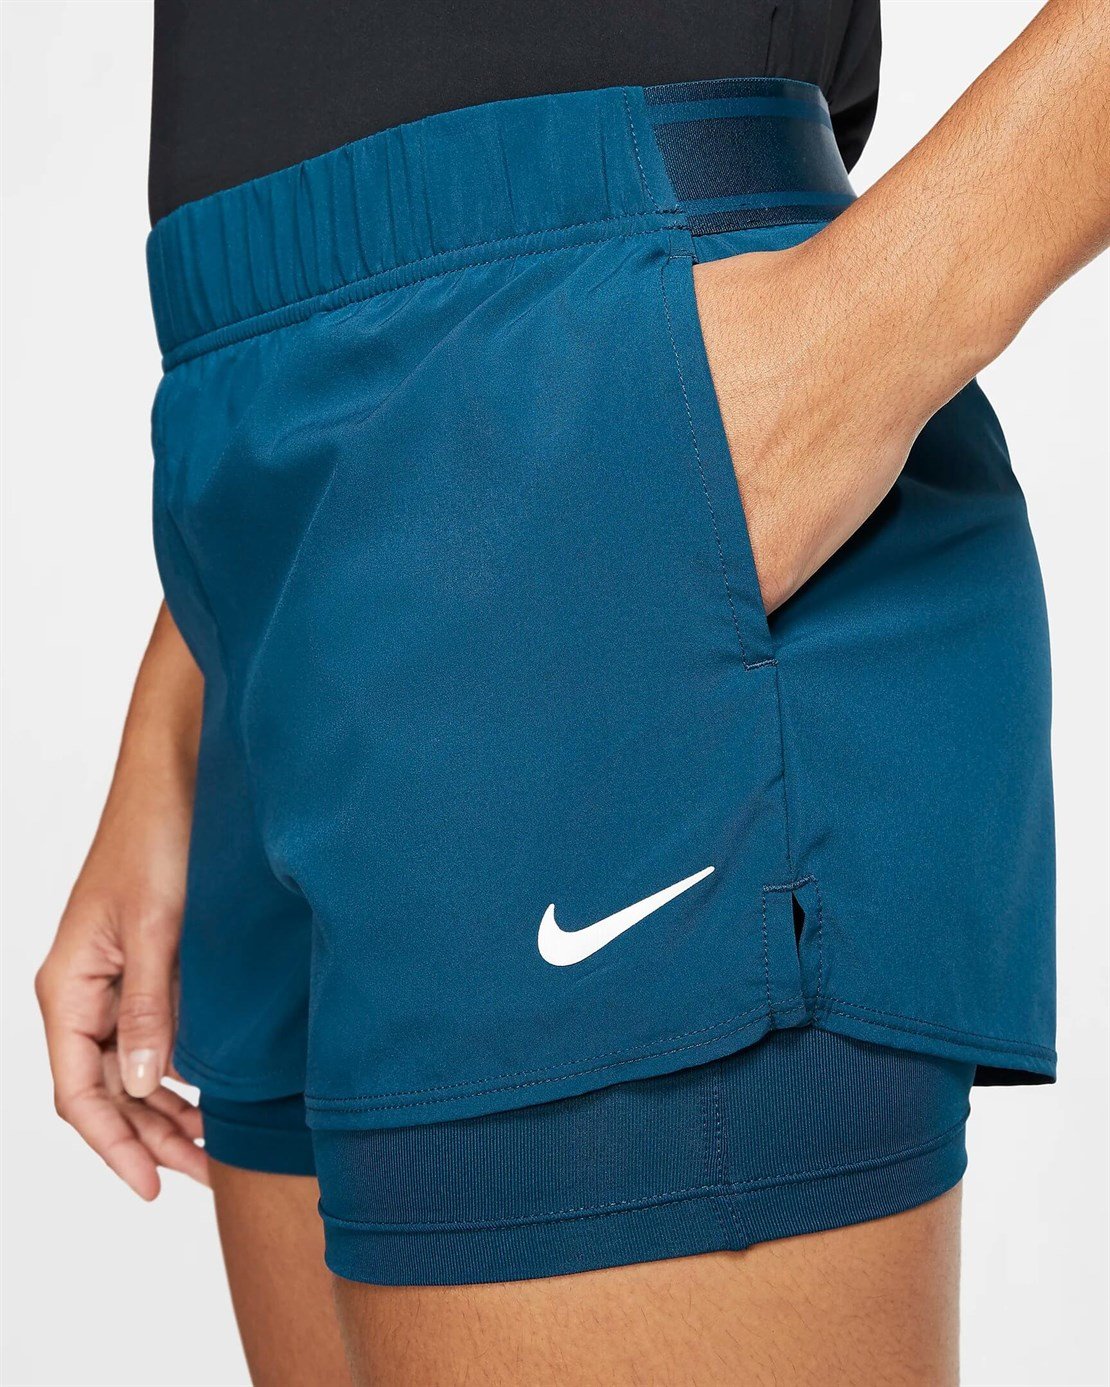 Nike Flex Kadın Tenis Şortu | Merit Spor